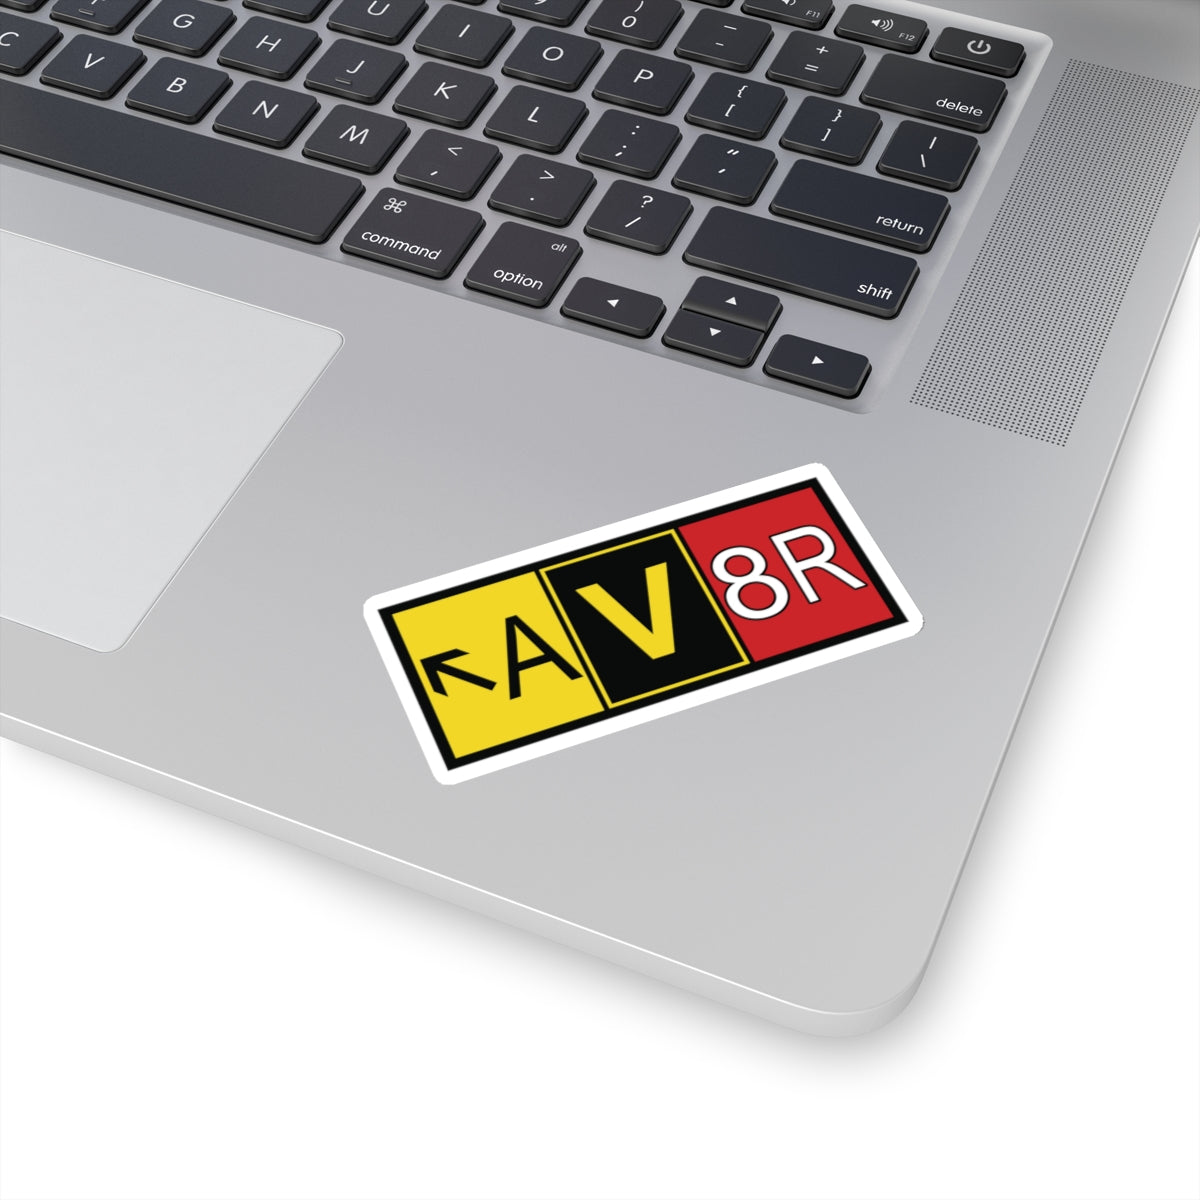 Aviator - AV8R - sticker